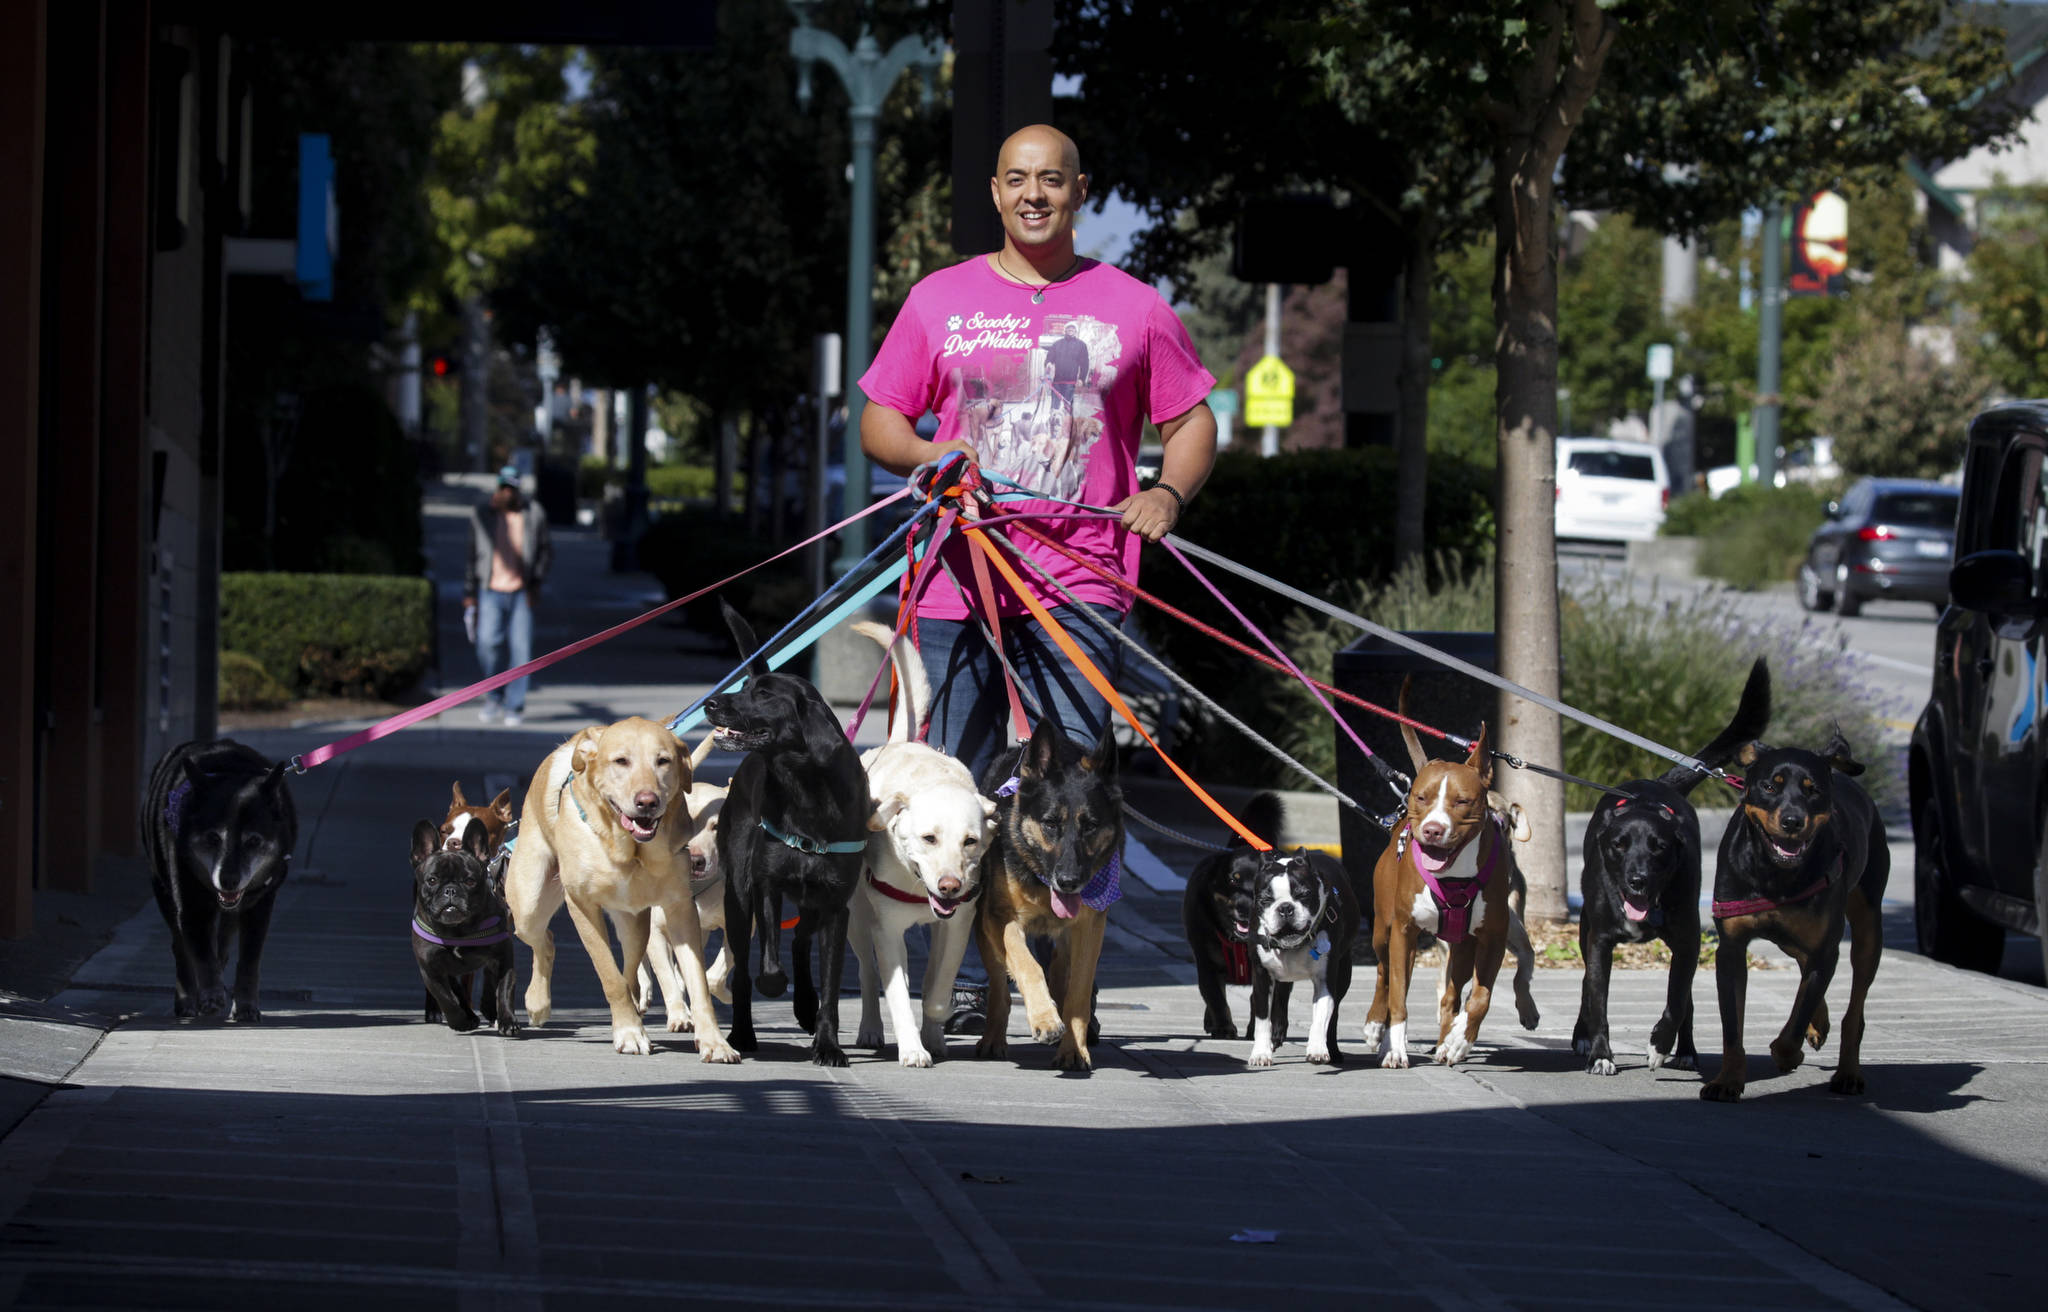 Professional dog walker Michael Silva, owner of Scooby’s Dogwalkin, walks a dozen dogs in downtown Everett. (Ian Terry / The Herald)